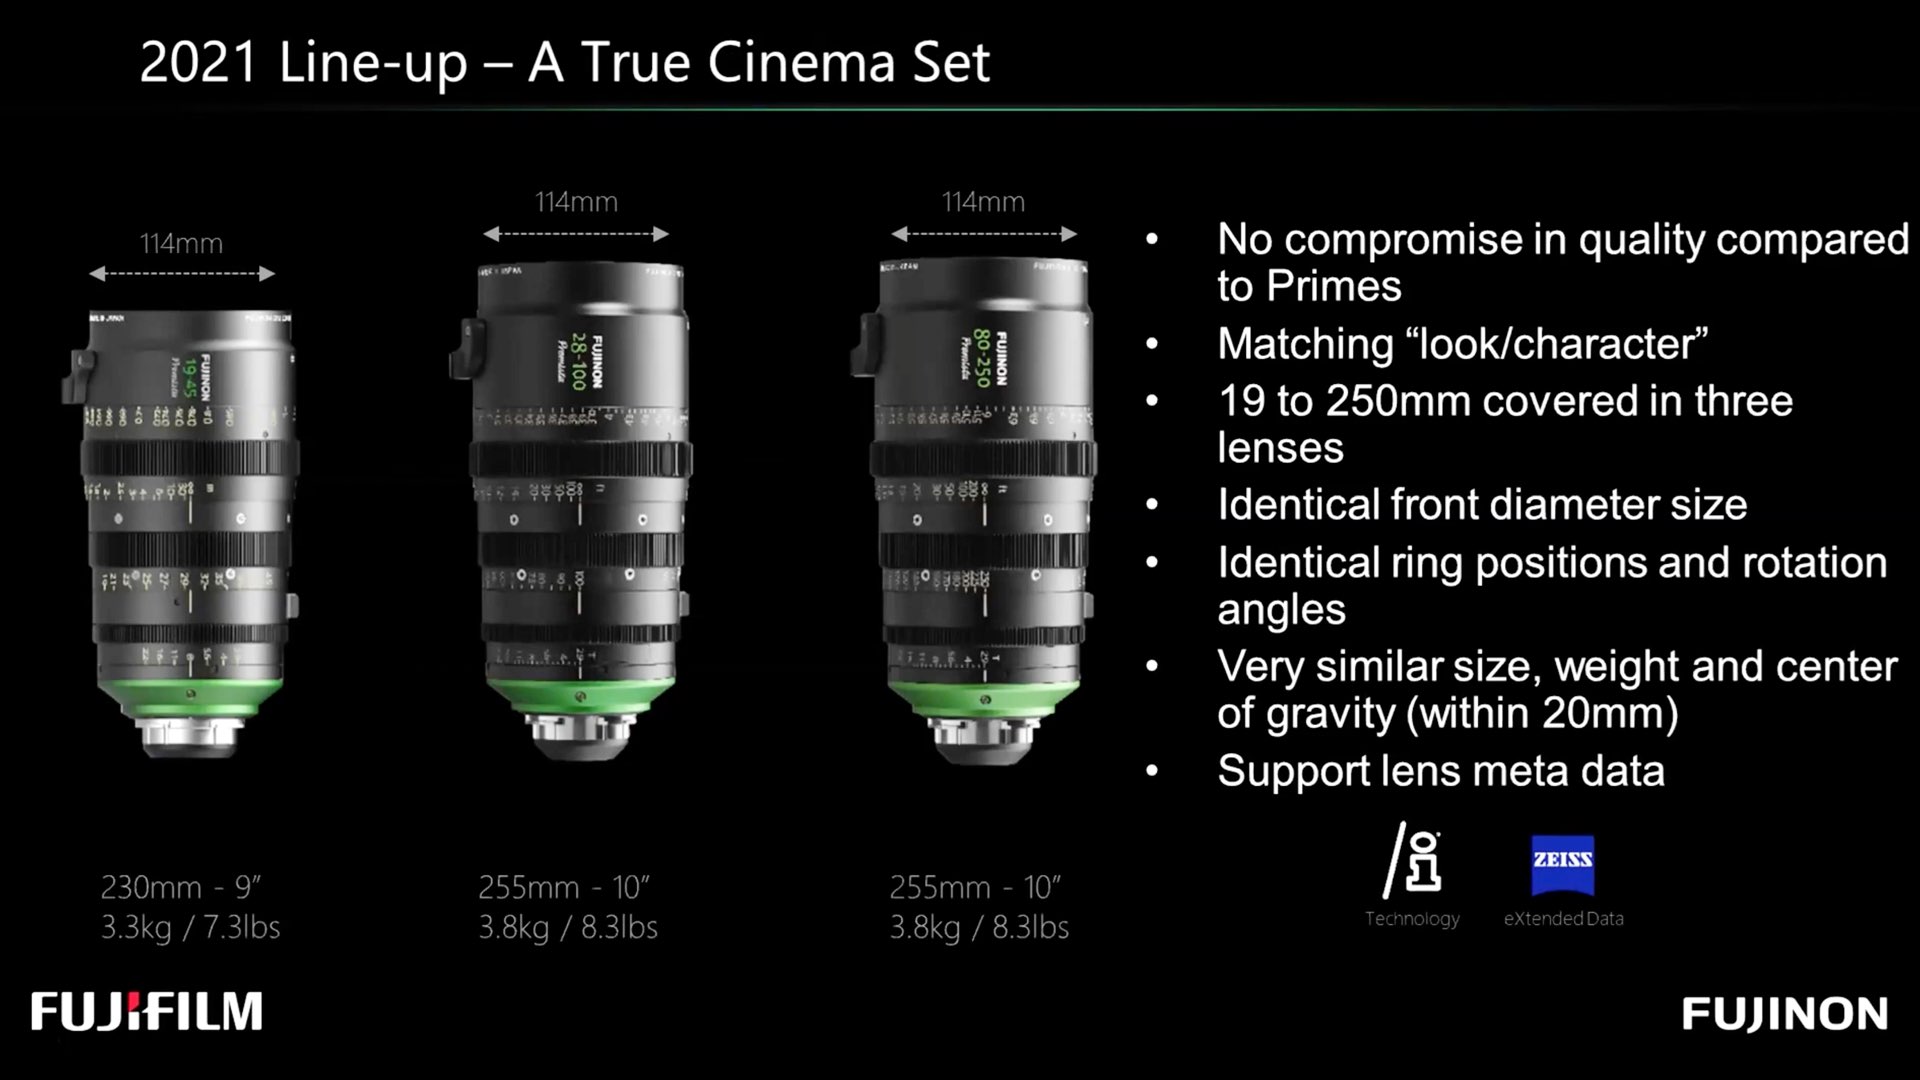 Le Fujinon Premista : diapositive de l'événement Lens 2021 de la Digital Cinema Society.